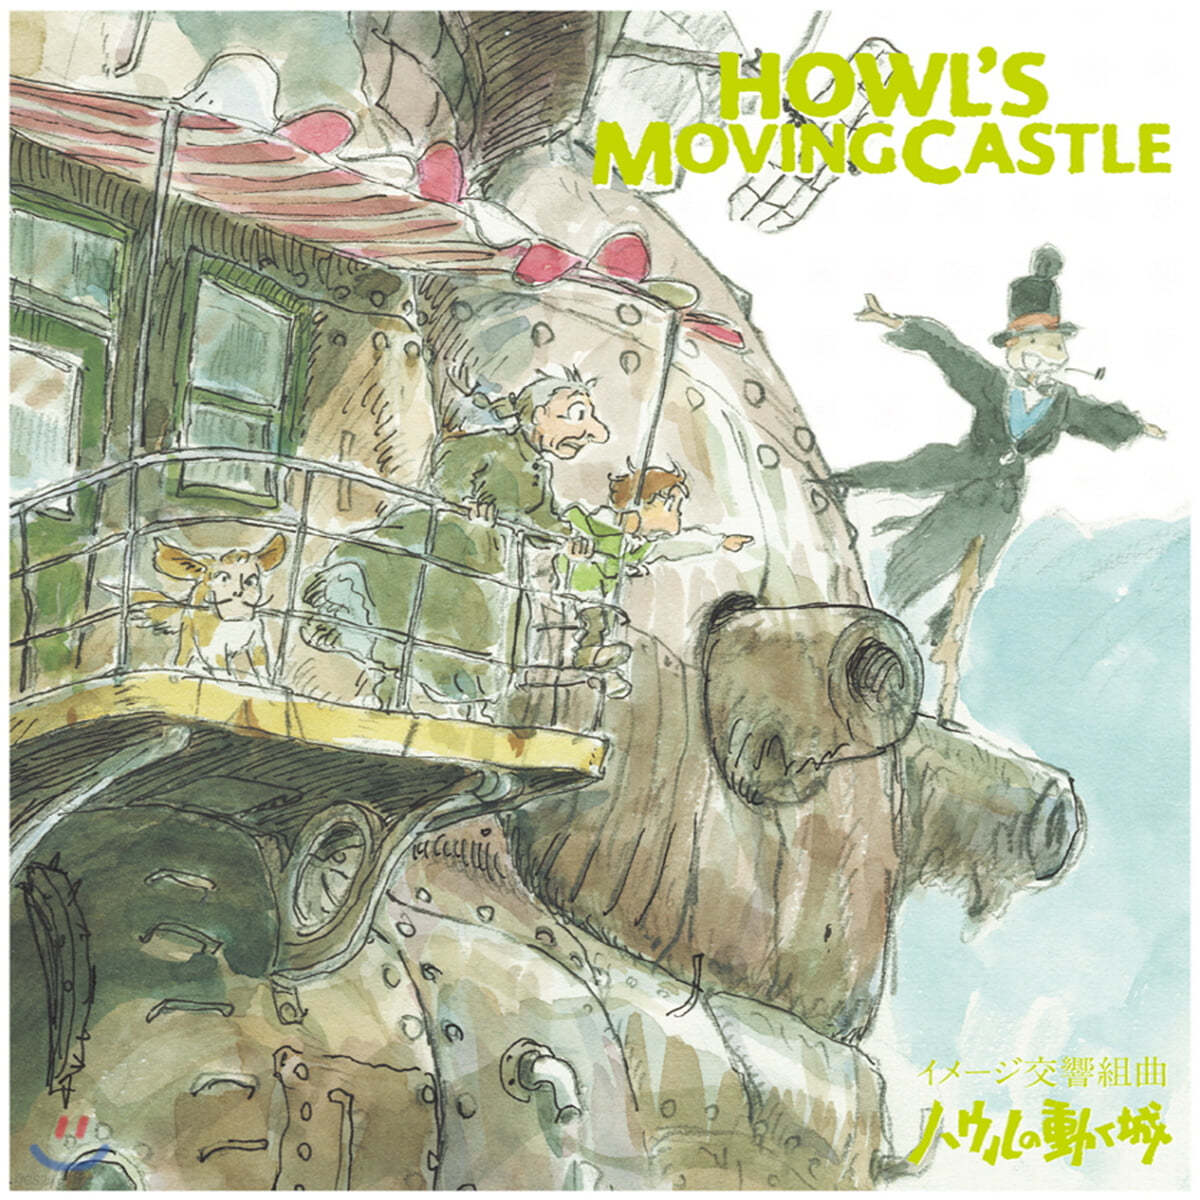 하울의 움직이는 성 이미지 심포닉 모음곡 (Howl&#39;s Moving Castle Image Symphonic Suite by Joe Hisaishi 히사이시 조) [LP]